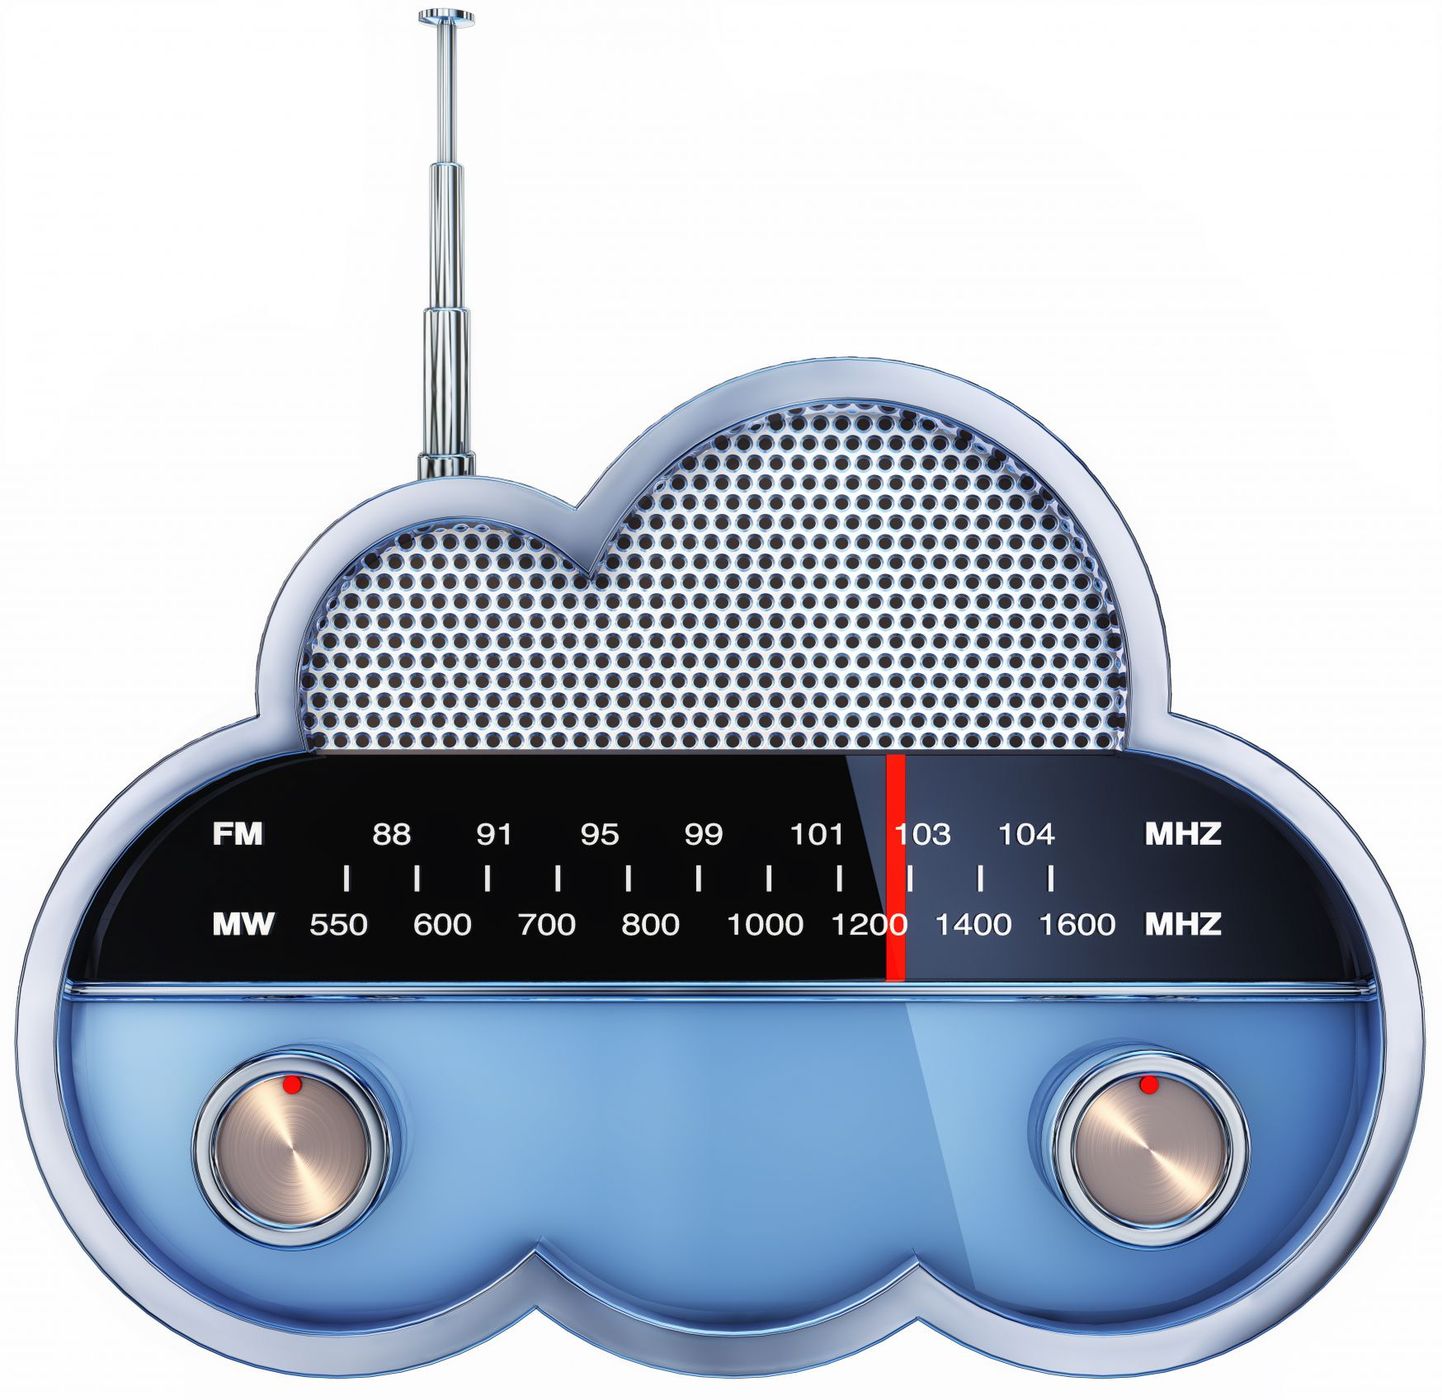 Raadiojaamad kasutavad täna FM lainepikkust.